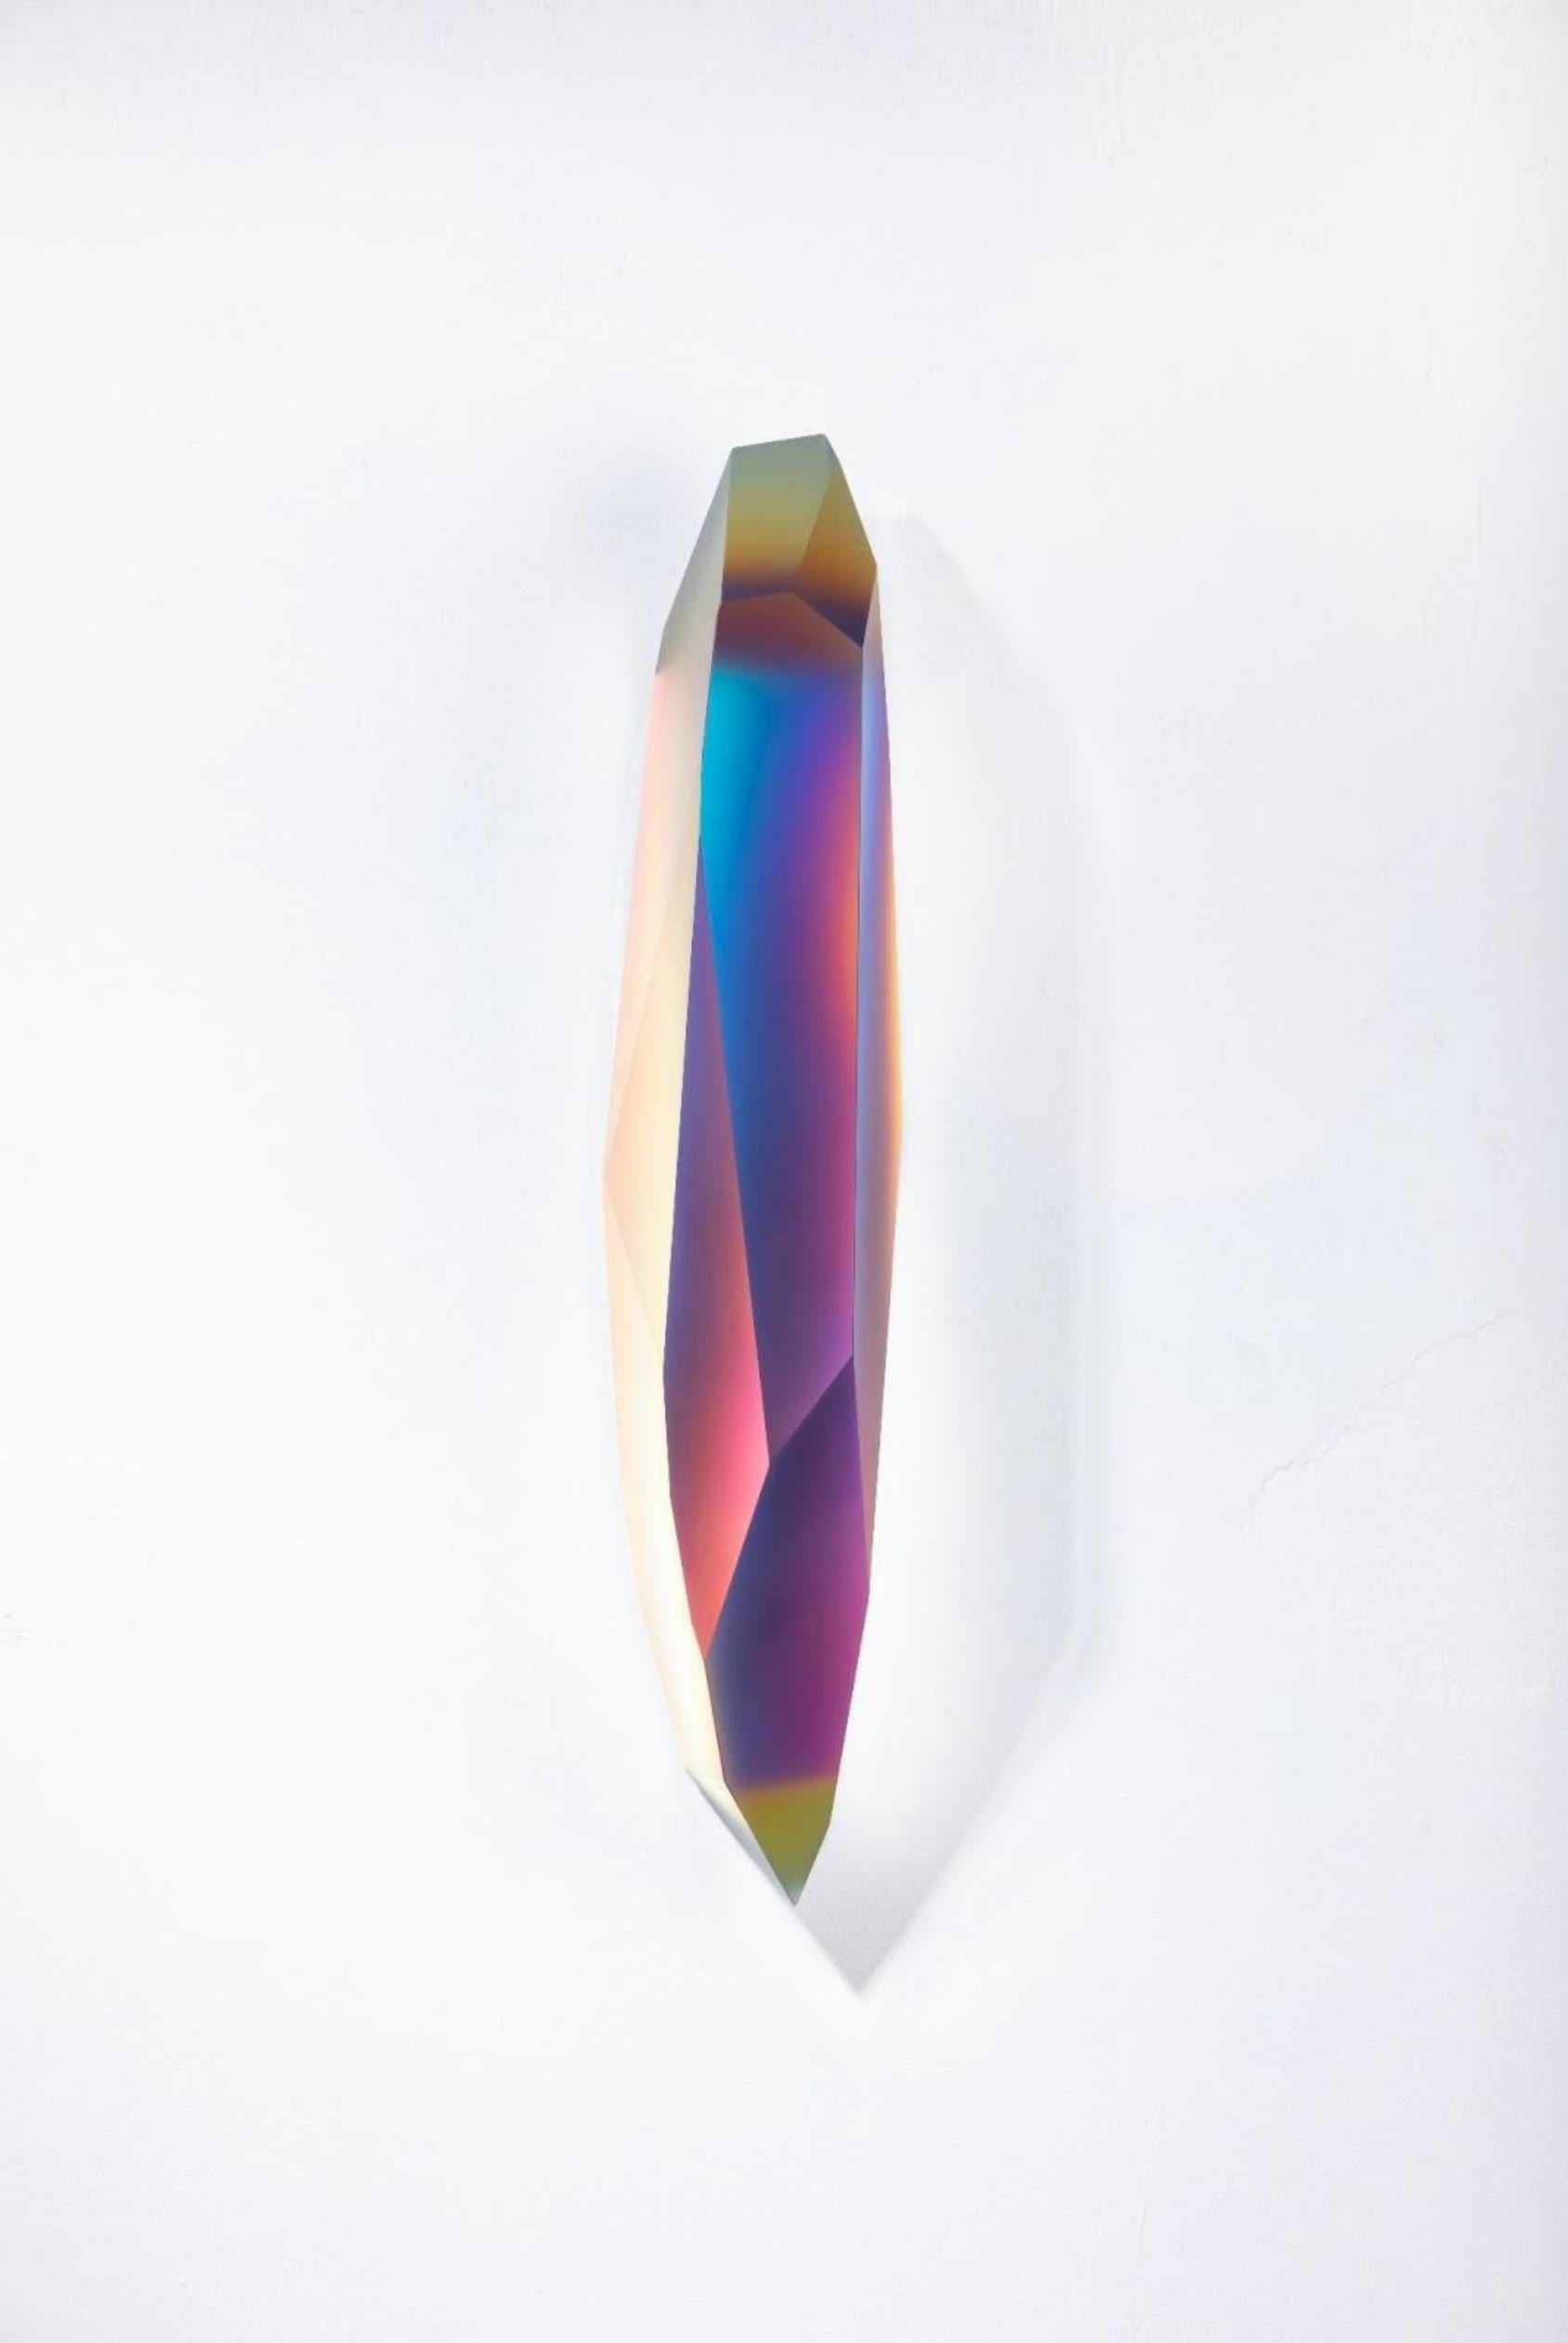 Pretty Mirage 0206 von Lukas Novak
Abmessungen: B 16 x T 16 x H 63 cm
MATERIALIEN: Geschliffenes Glas, Kristall, Farbverlauf

Die Pretty Mirage Serie ist aus Wandkristallen gefertigt. Es ist eine einzigartige Komposition aus Glasschliffen und einem